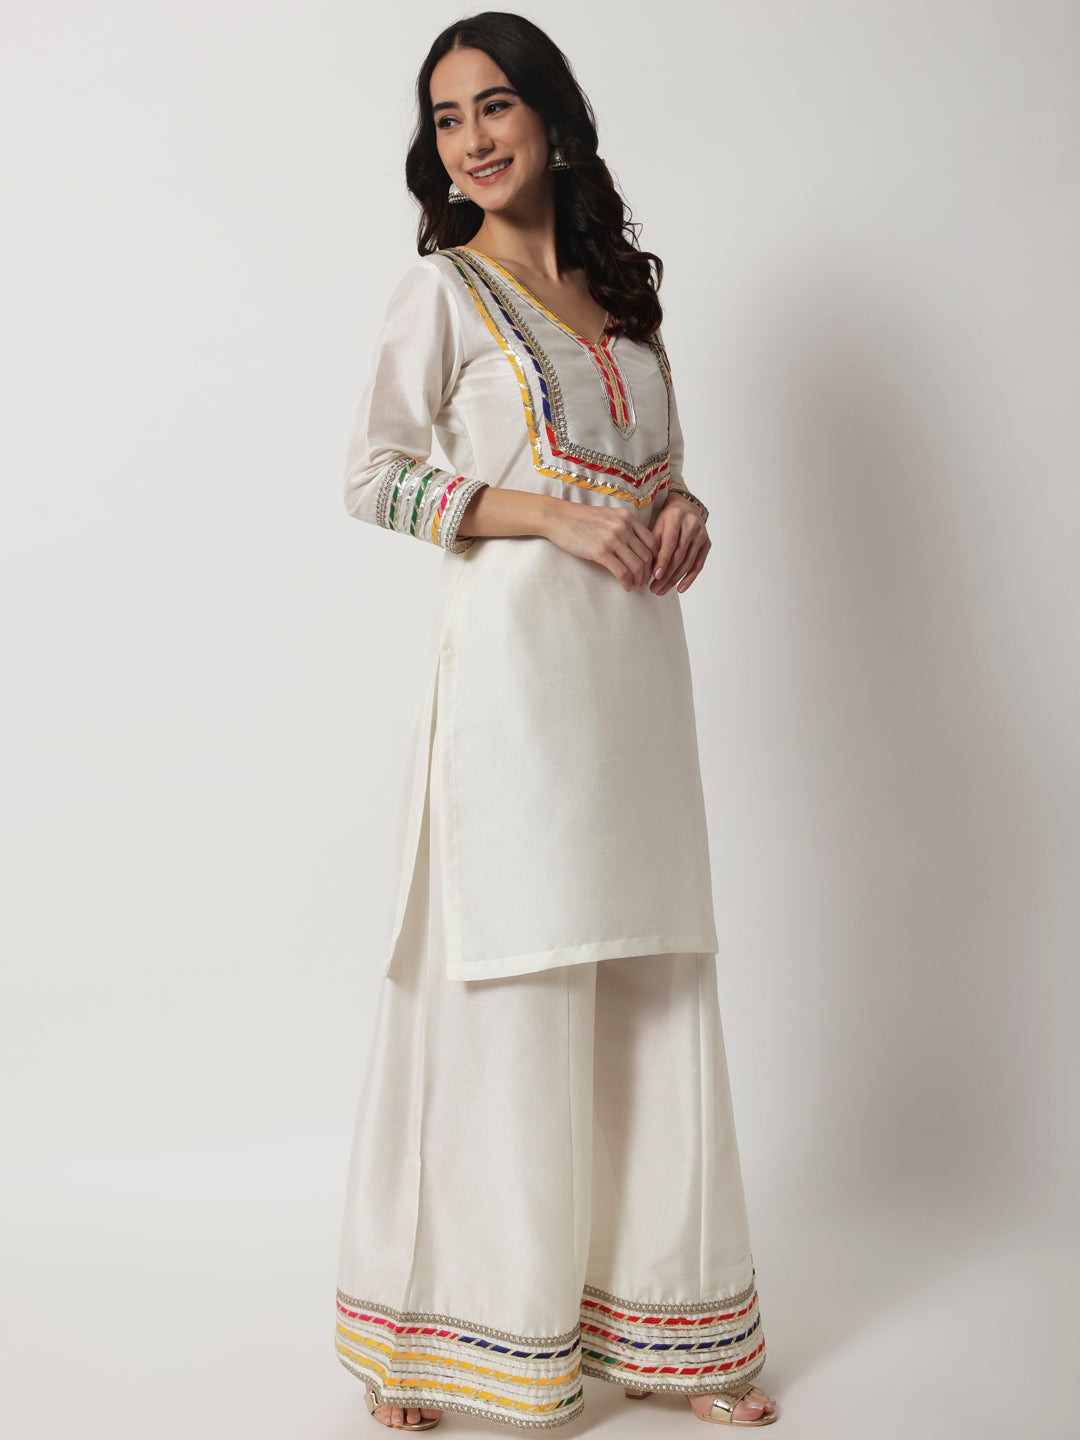 Arayna Women's Cotton Printed Straight Kurti Palazzo Pants Set With Dupatta  (Small) : Amazon.in: Fashion